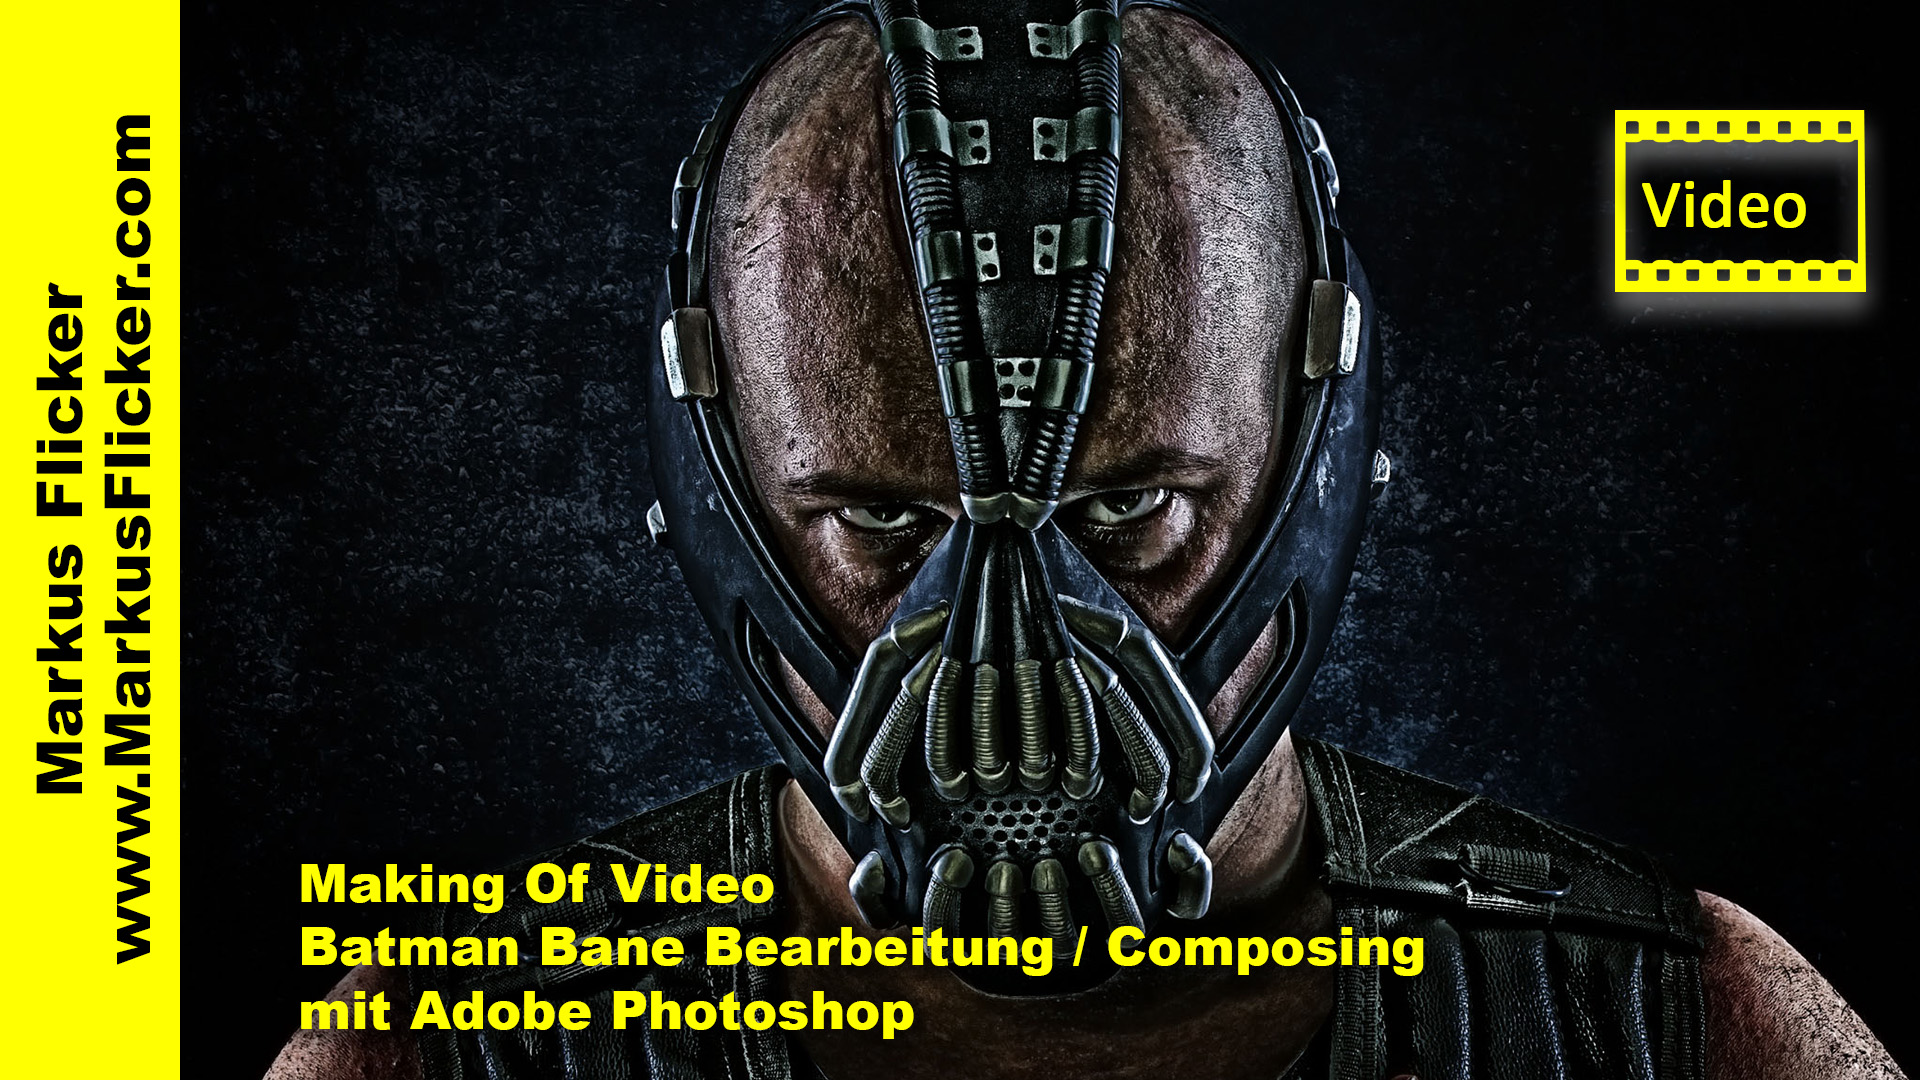 Making Of Video Batman Bane Bearbeitung / Composing mit Adobe Photoshop